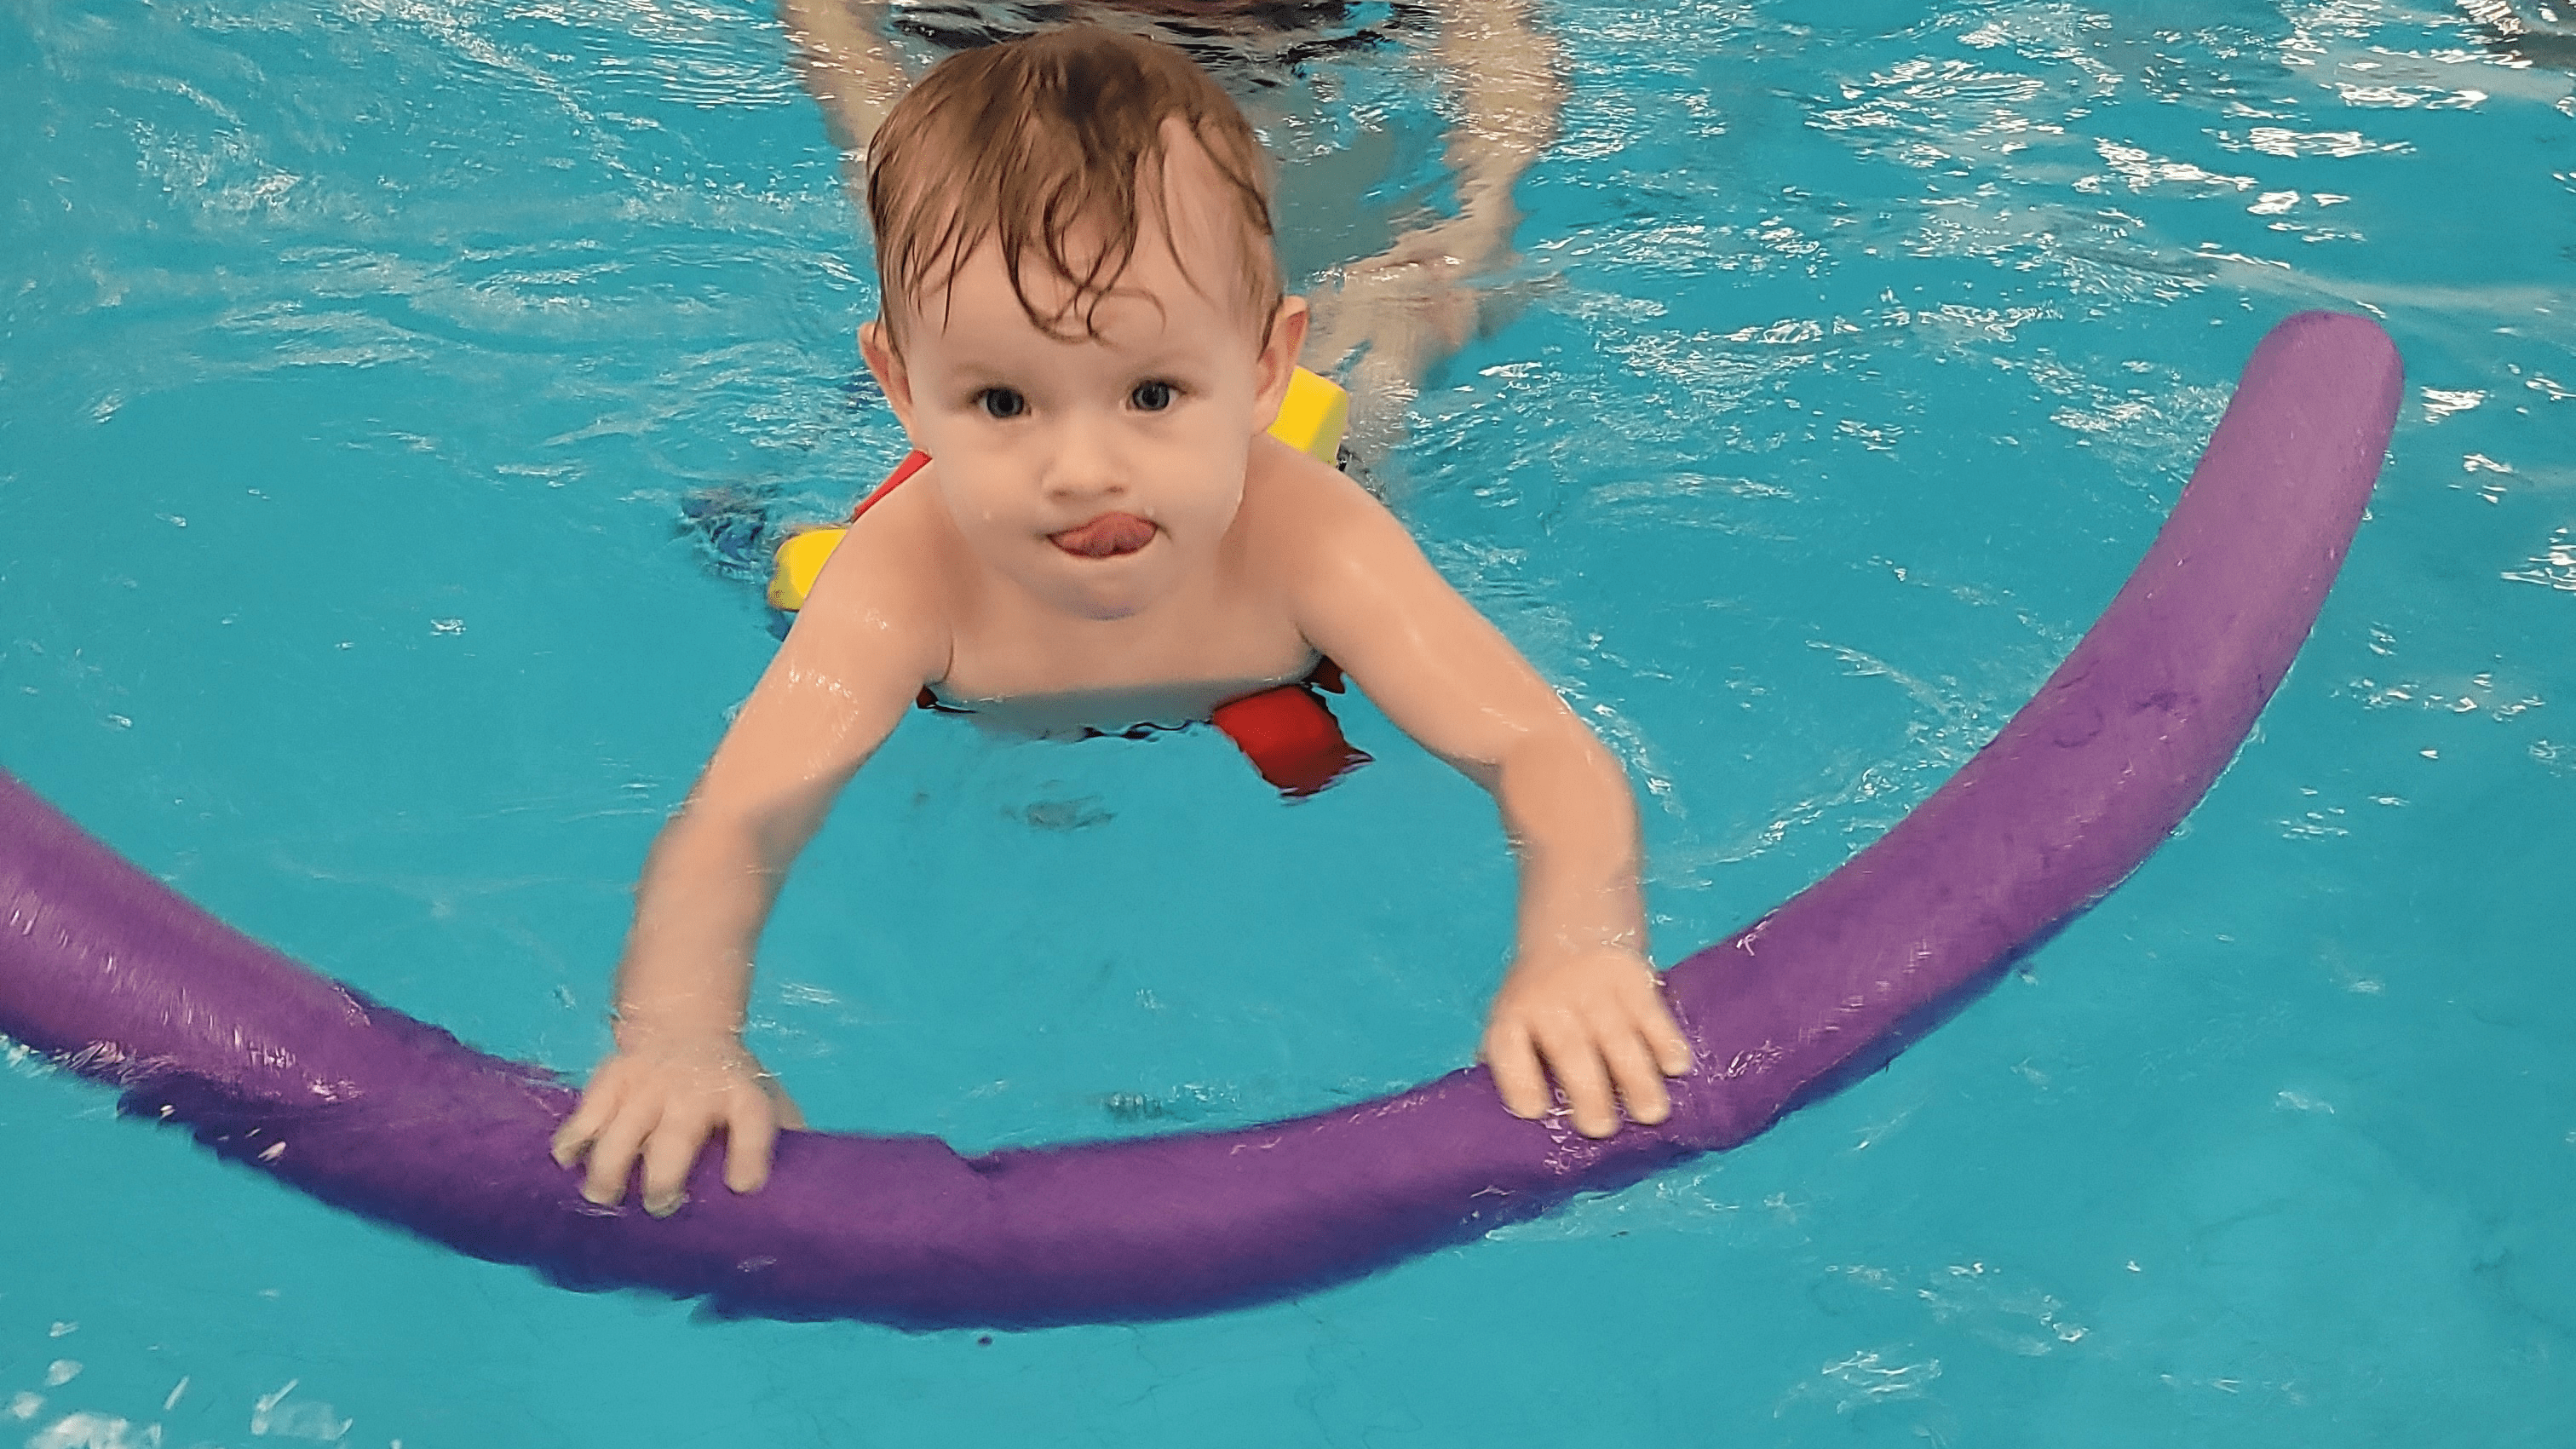 Kurzy plavání pro děti od 6 měsíců do 14 let